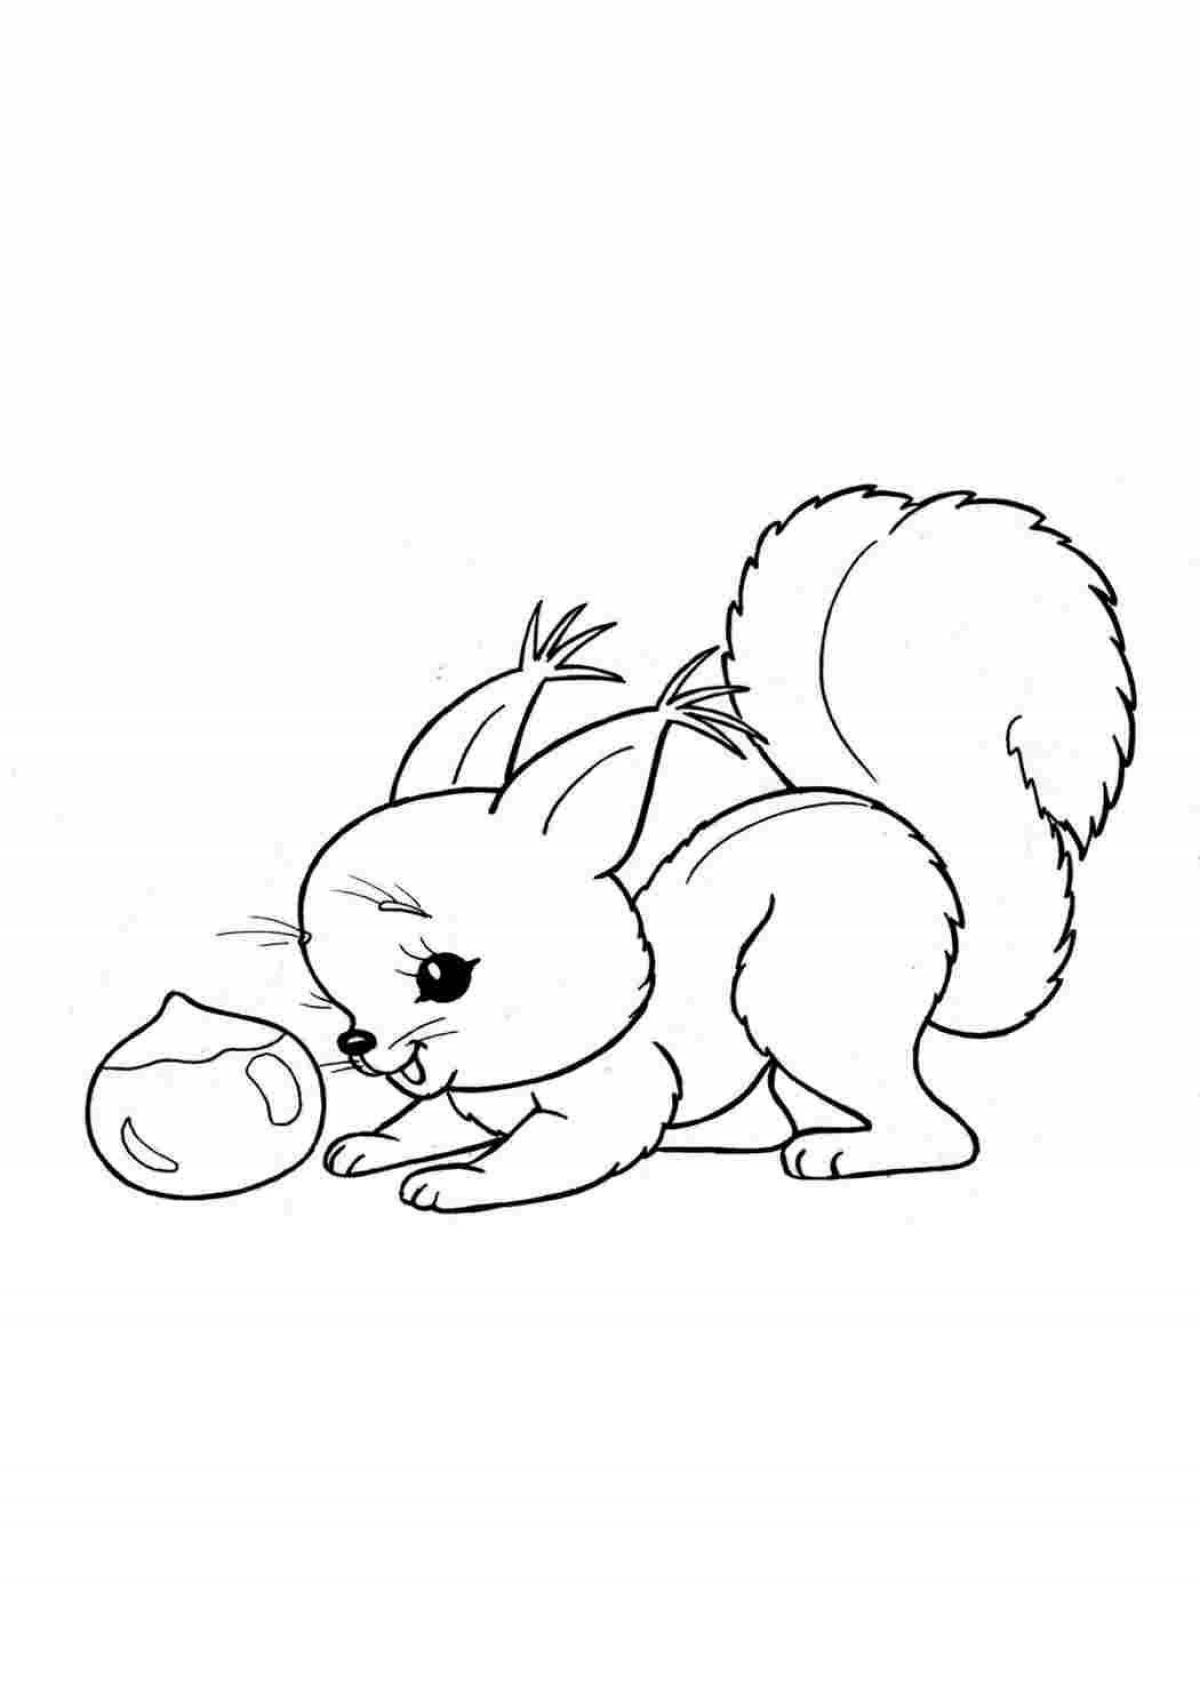 Sparkling squirrel coloring image